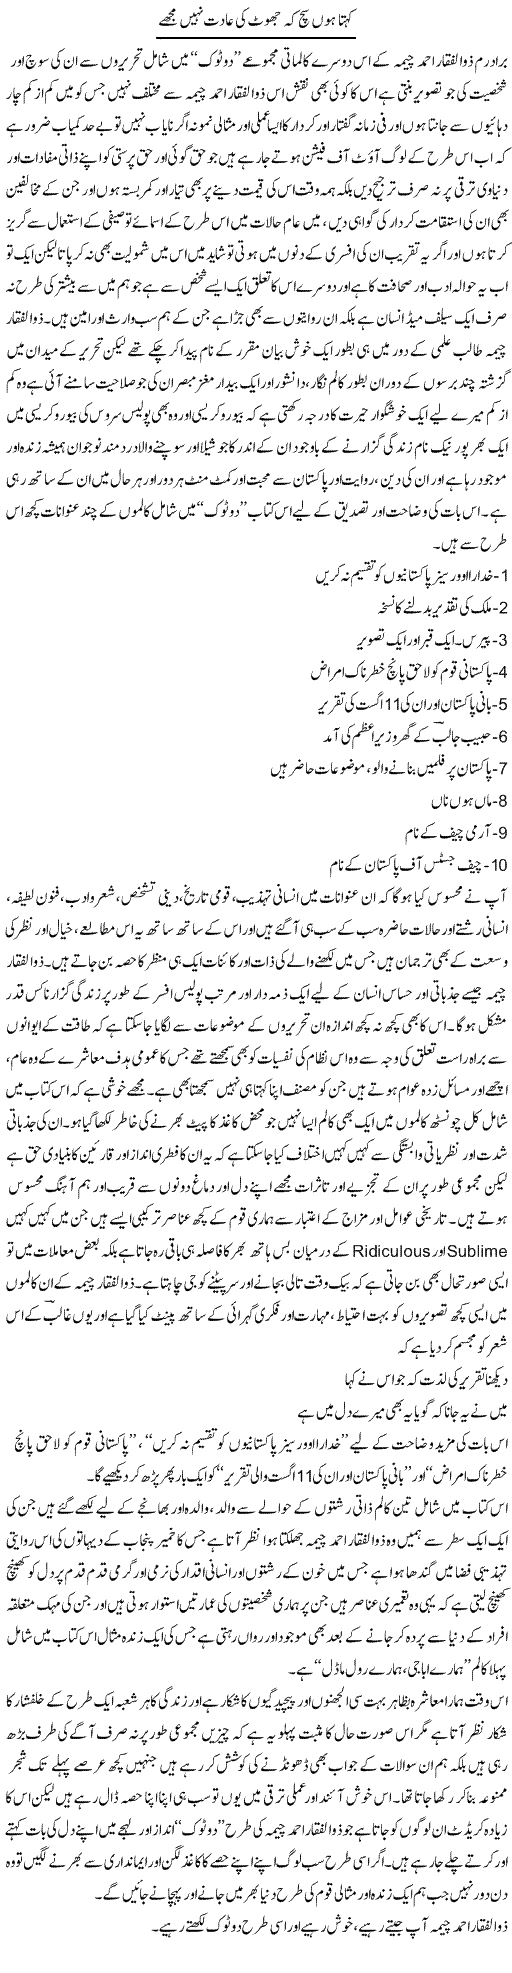 Kehta Hoon Sach Ke Jhoot Ki Aadat Nahi Mujhe | Amjad Islam Amjad | Daily Urdu Columns